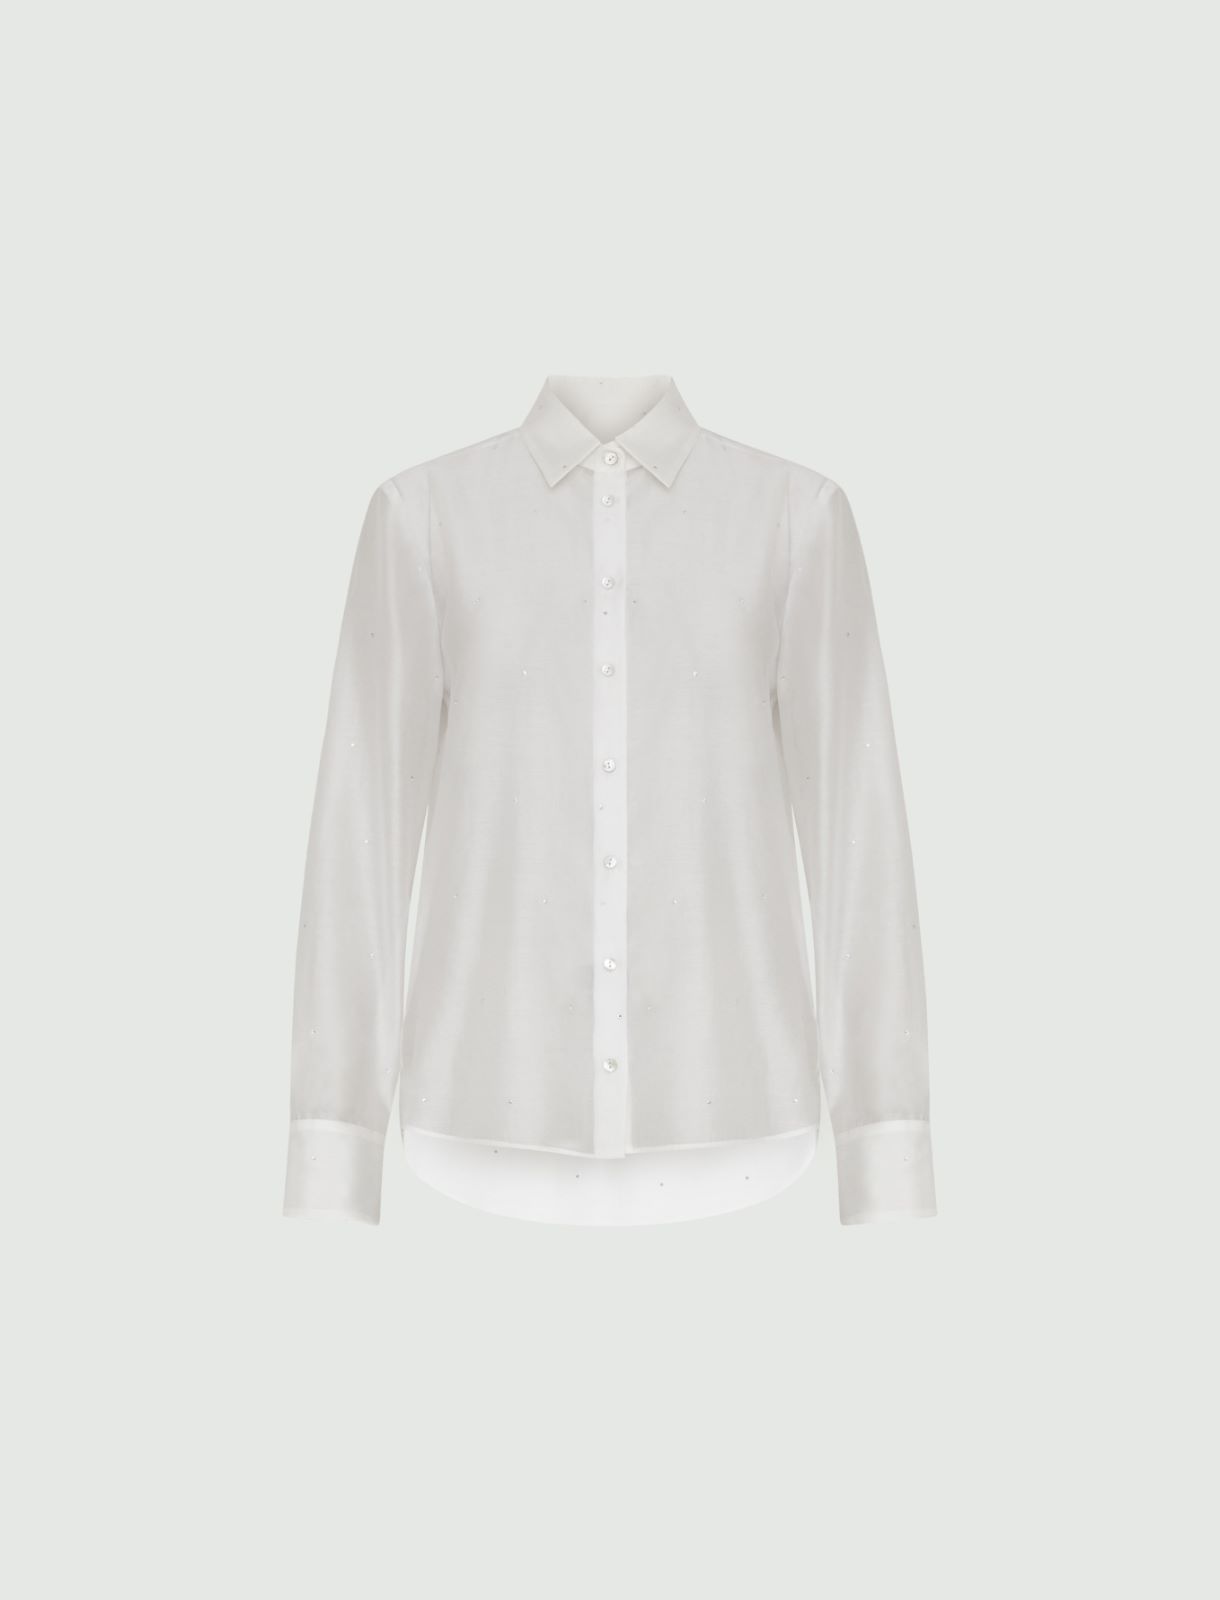 Rhinestone shirt - White - Marella - 5